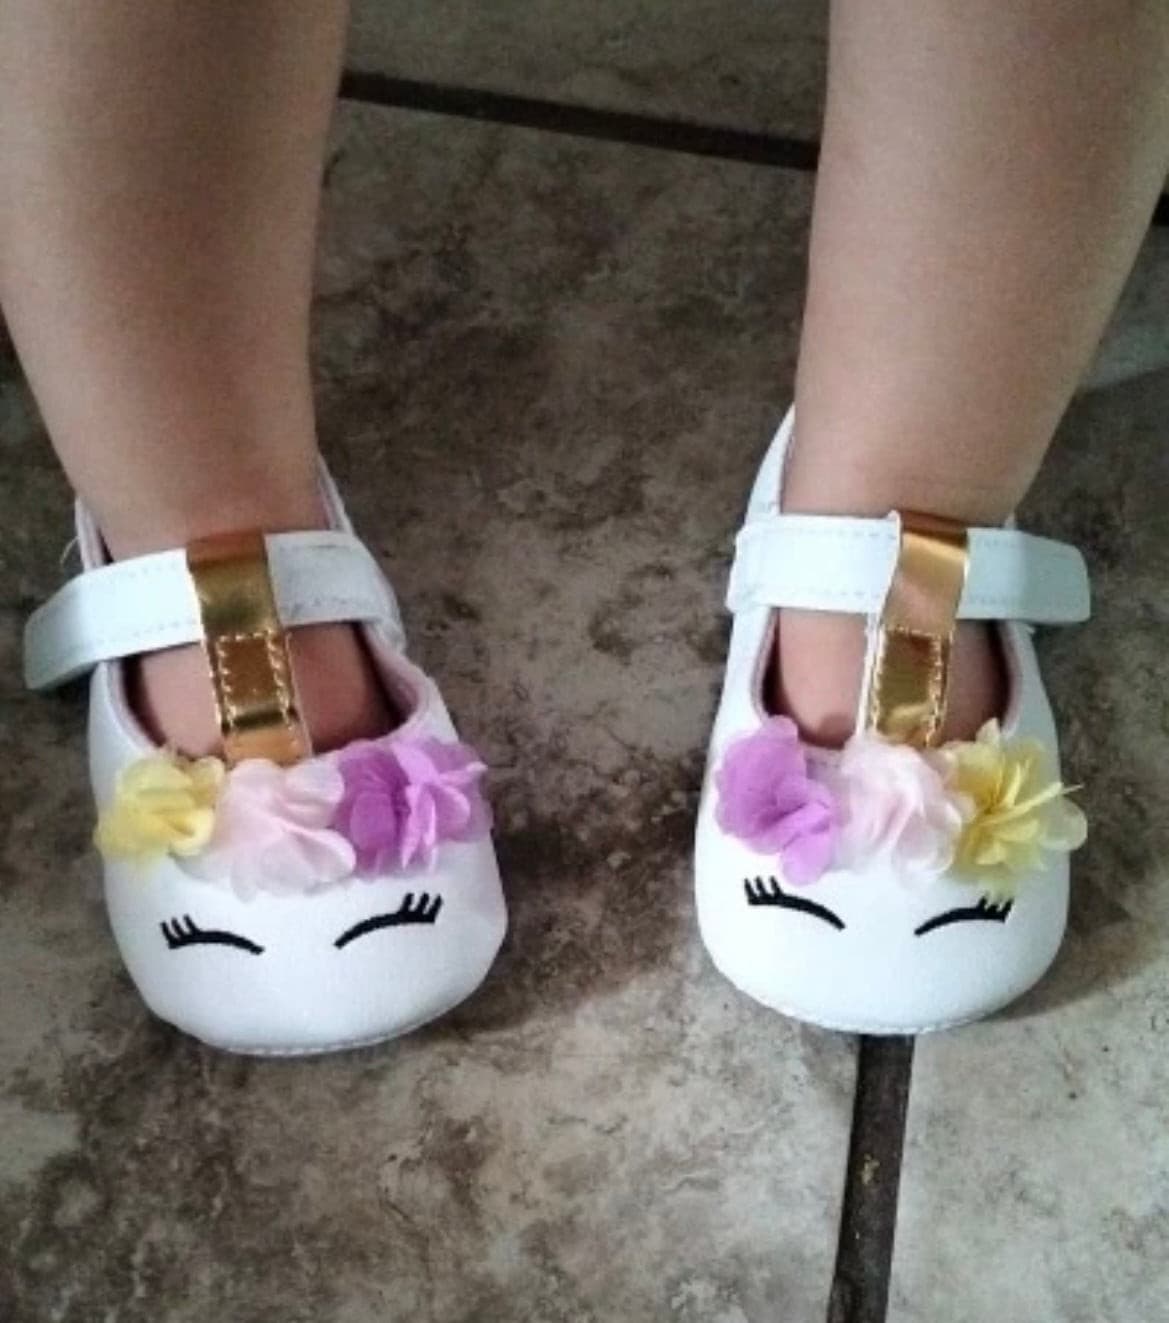 Unicorn Baby Shoes.